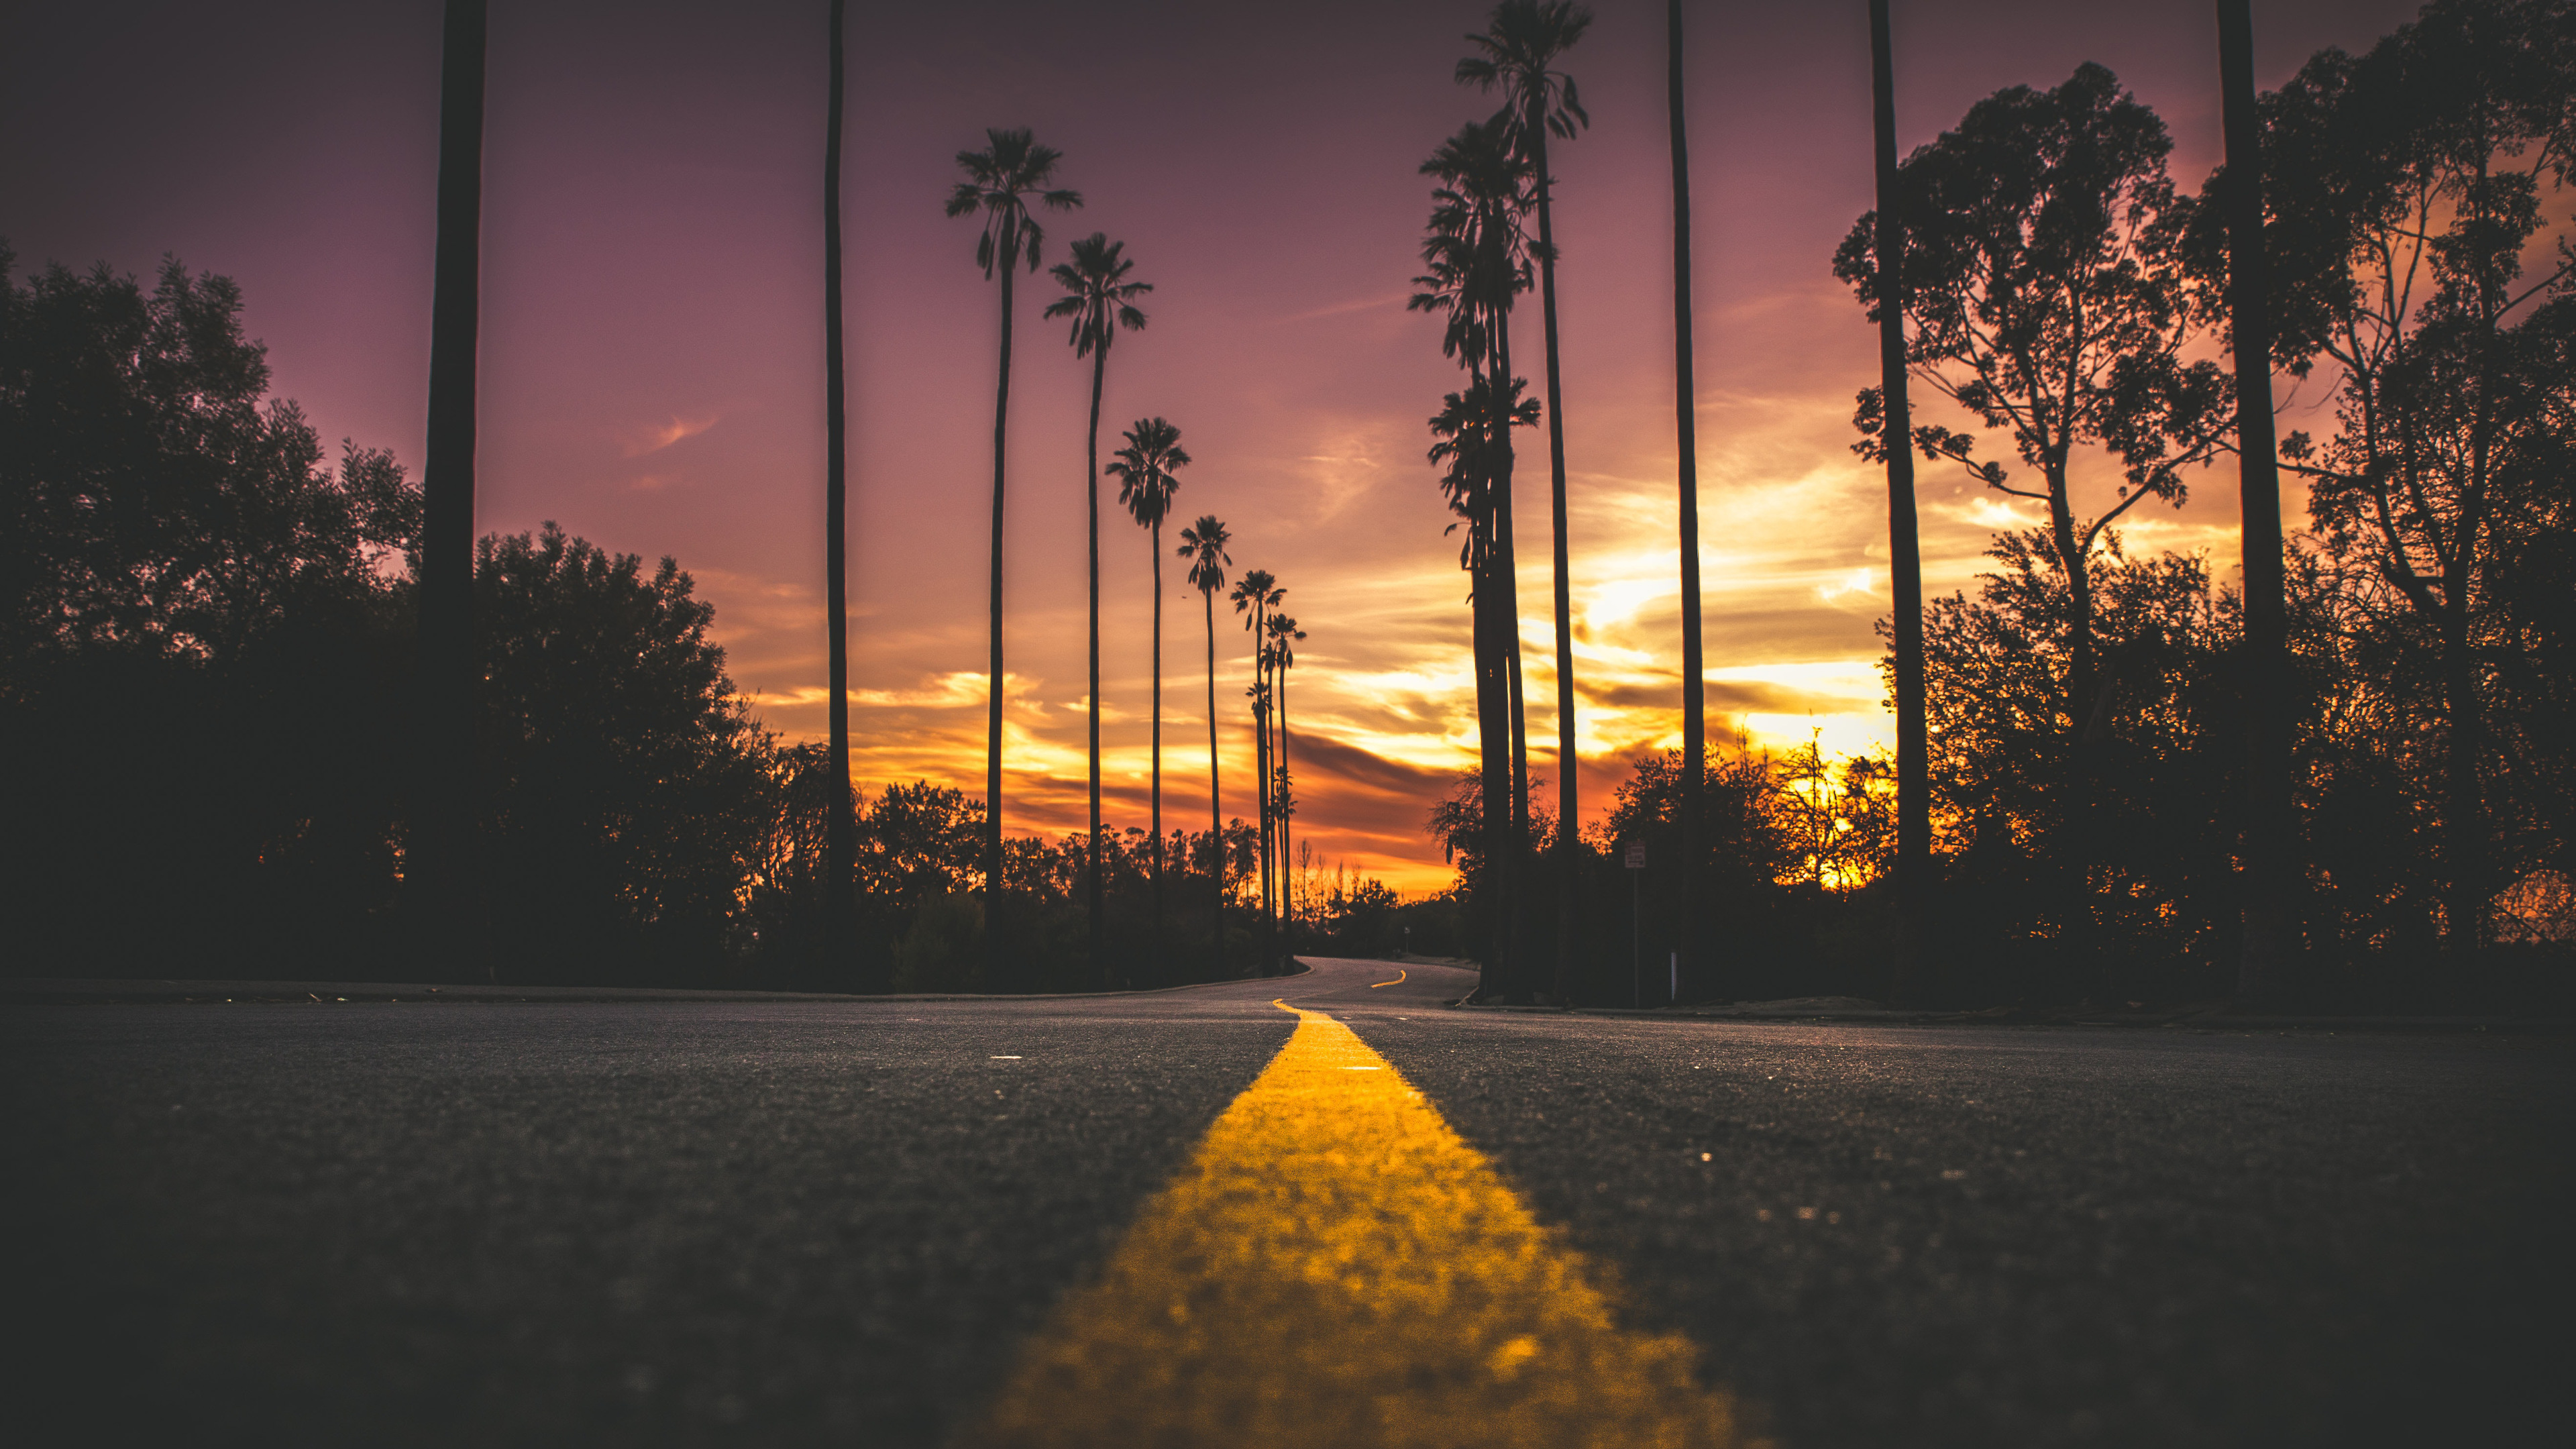 Sunset, Road, Landscape, Scenery, 4K, #170 Wallpaper Pc Desktop